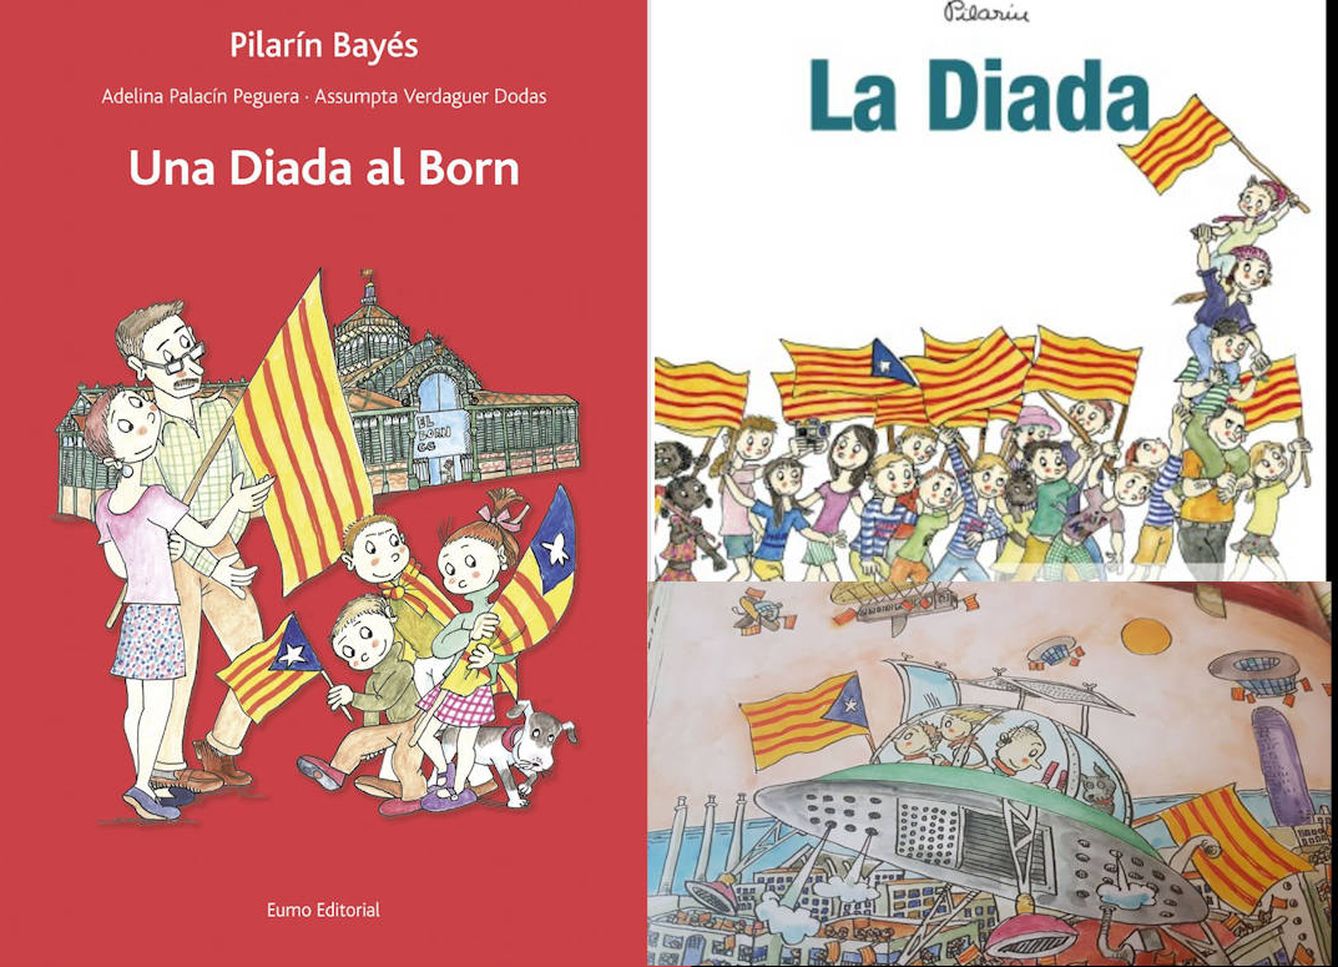 Tres ejemplos del dibujo destinado al público infantil de Pilarín Bayés.